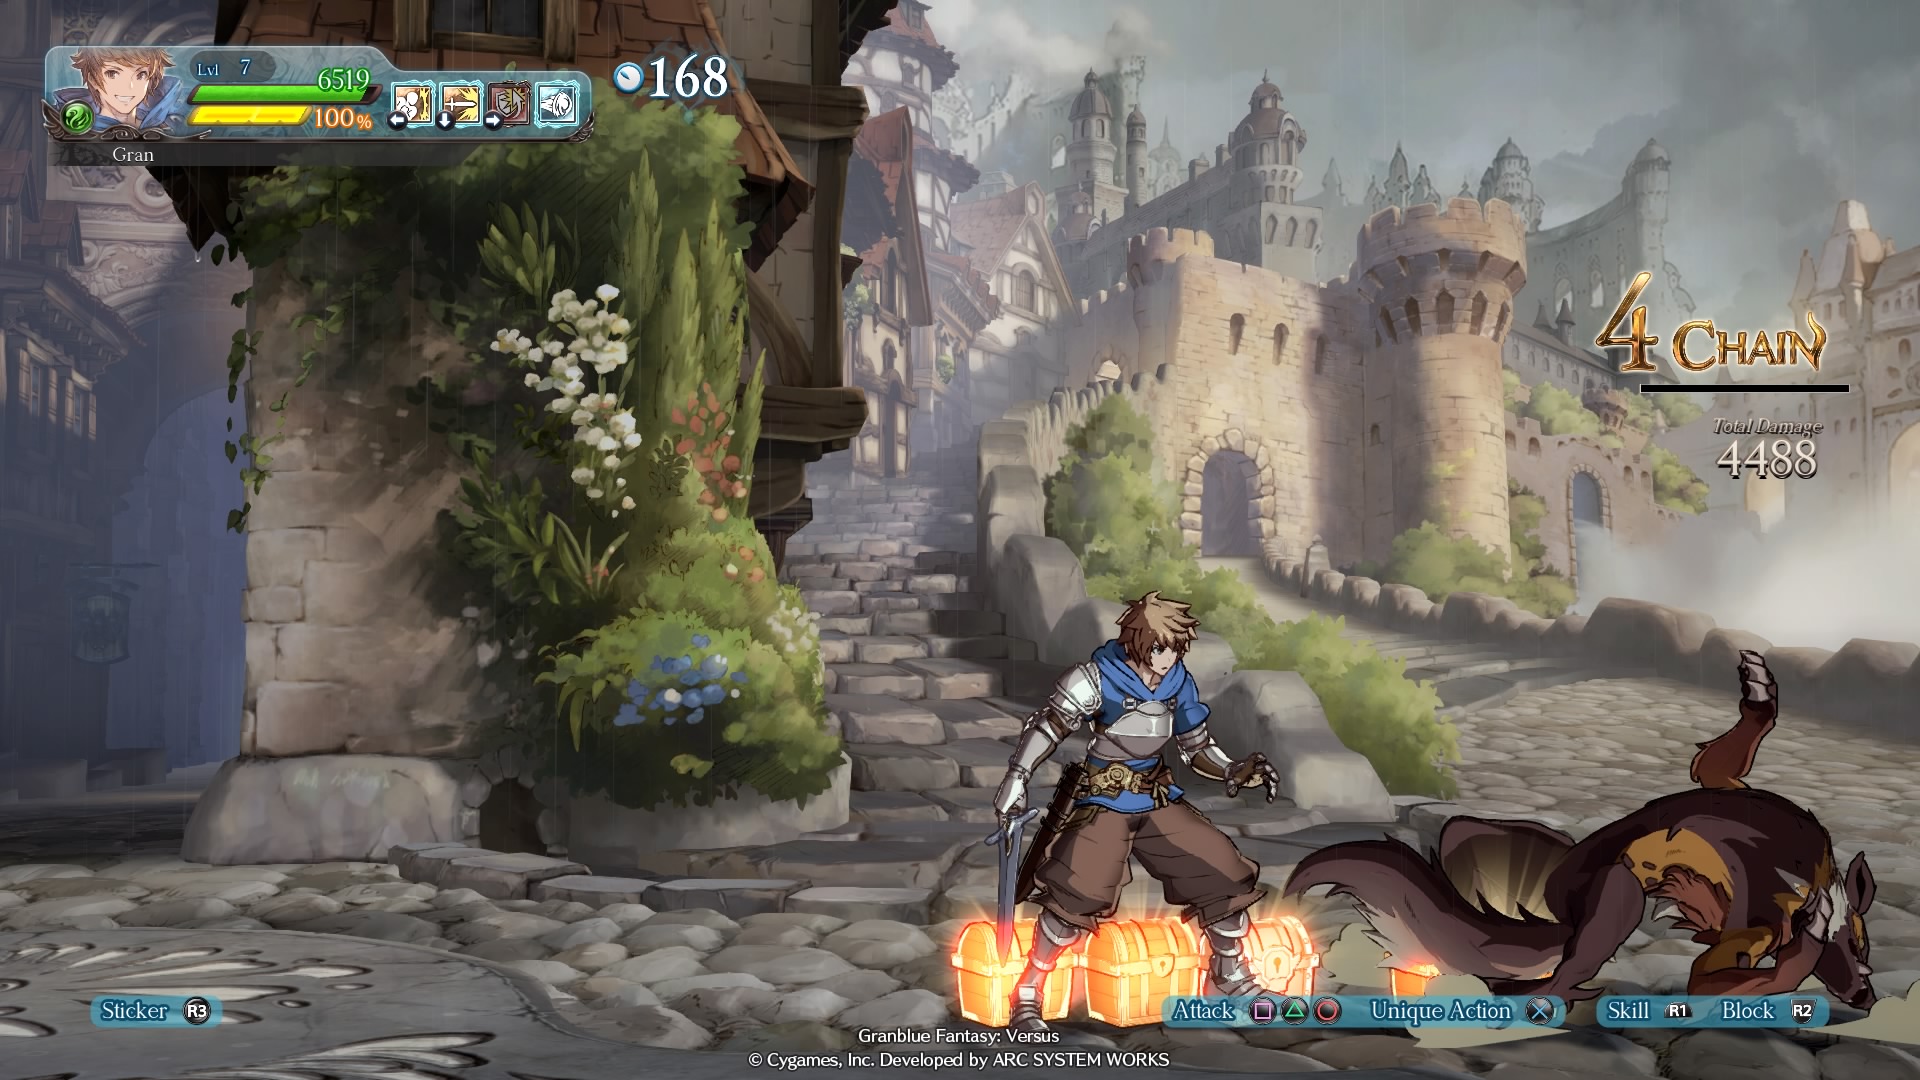 Granblue Fantasy Versus: Rising - Beta Character Select Screen 